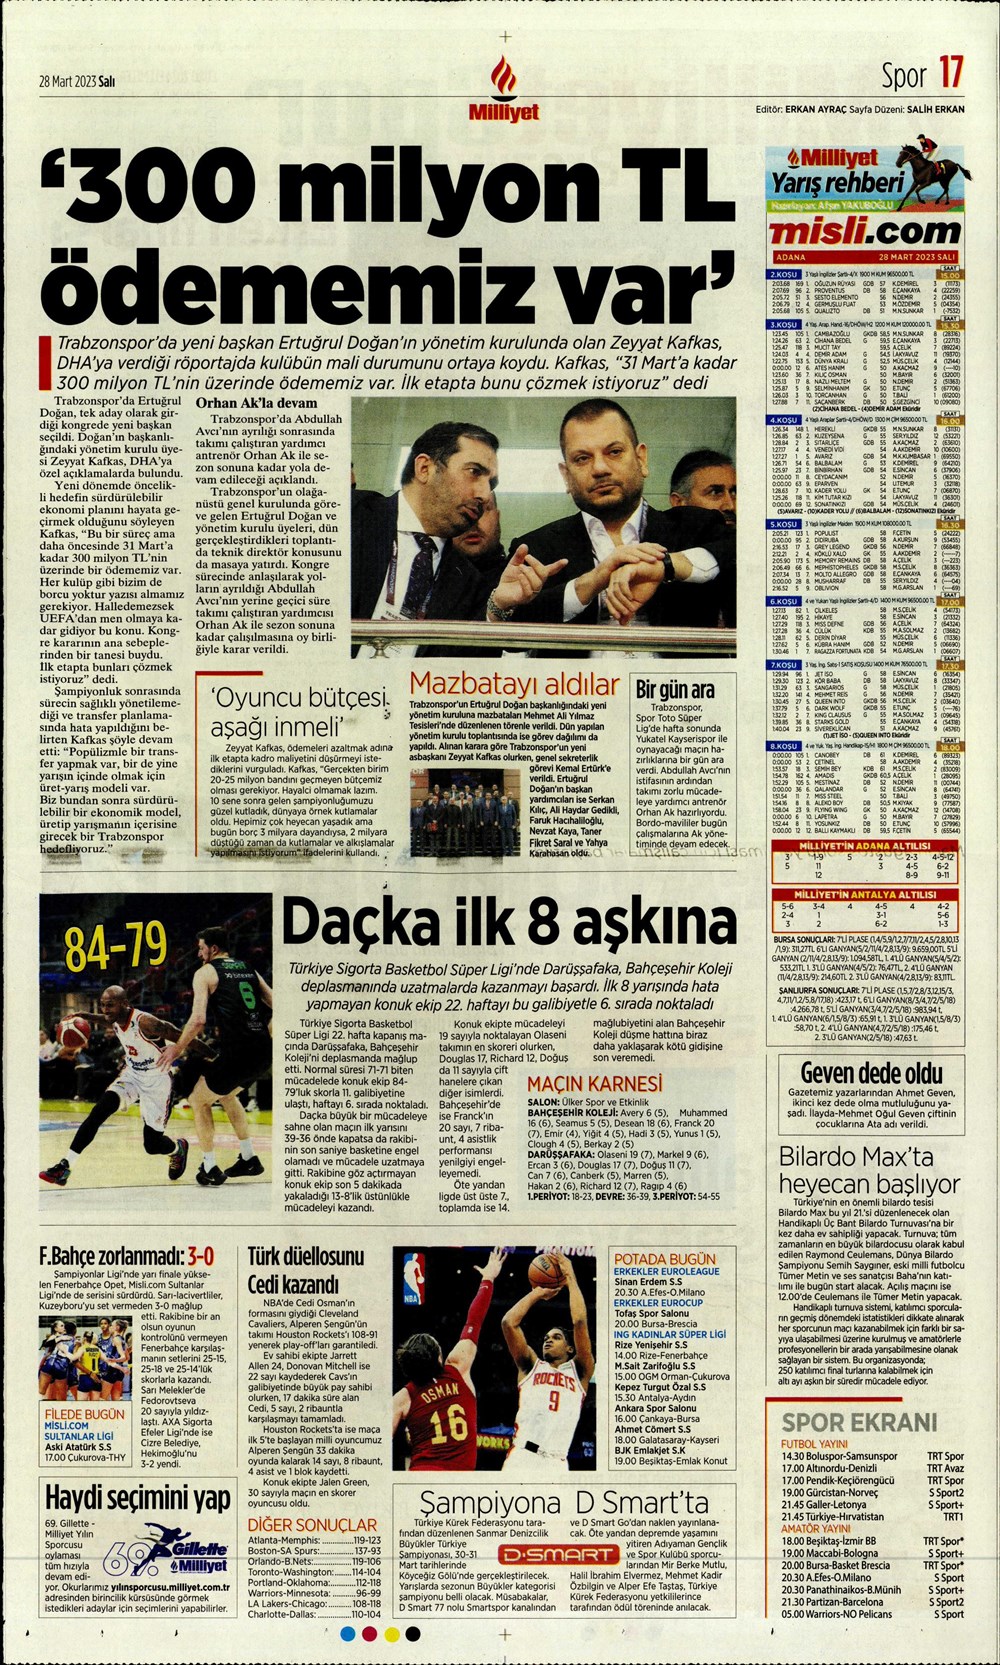 "Vurduğumuz gol olsun" - Sporun manşetleri - 24. Foto